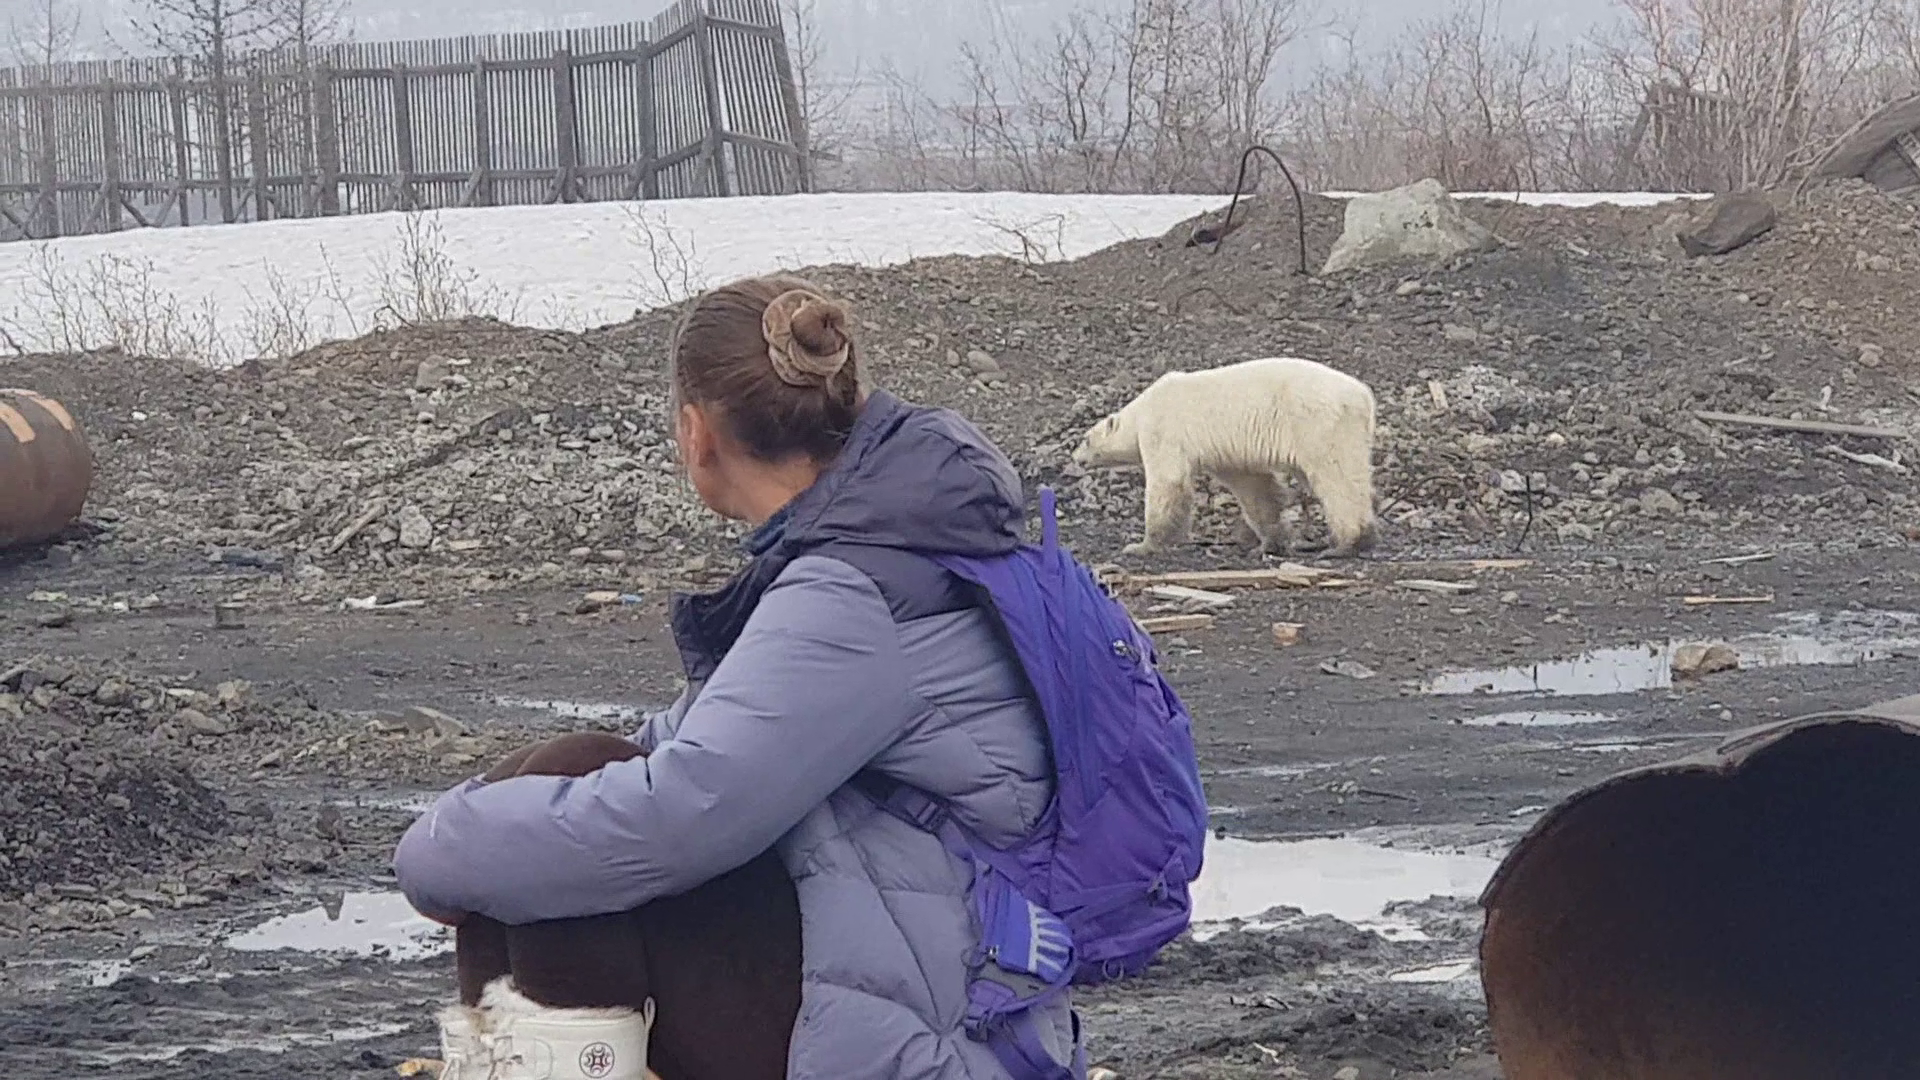 Mégsem az éhség űzhette délre, hanem fogságból szökhetett meg a norilszki jegesmedve